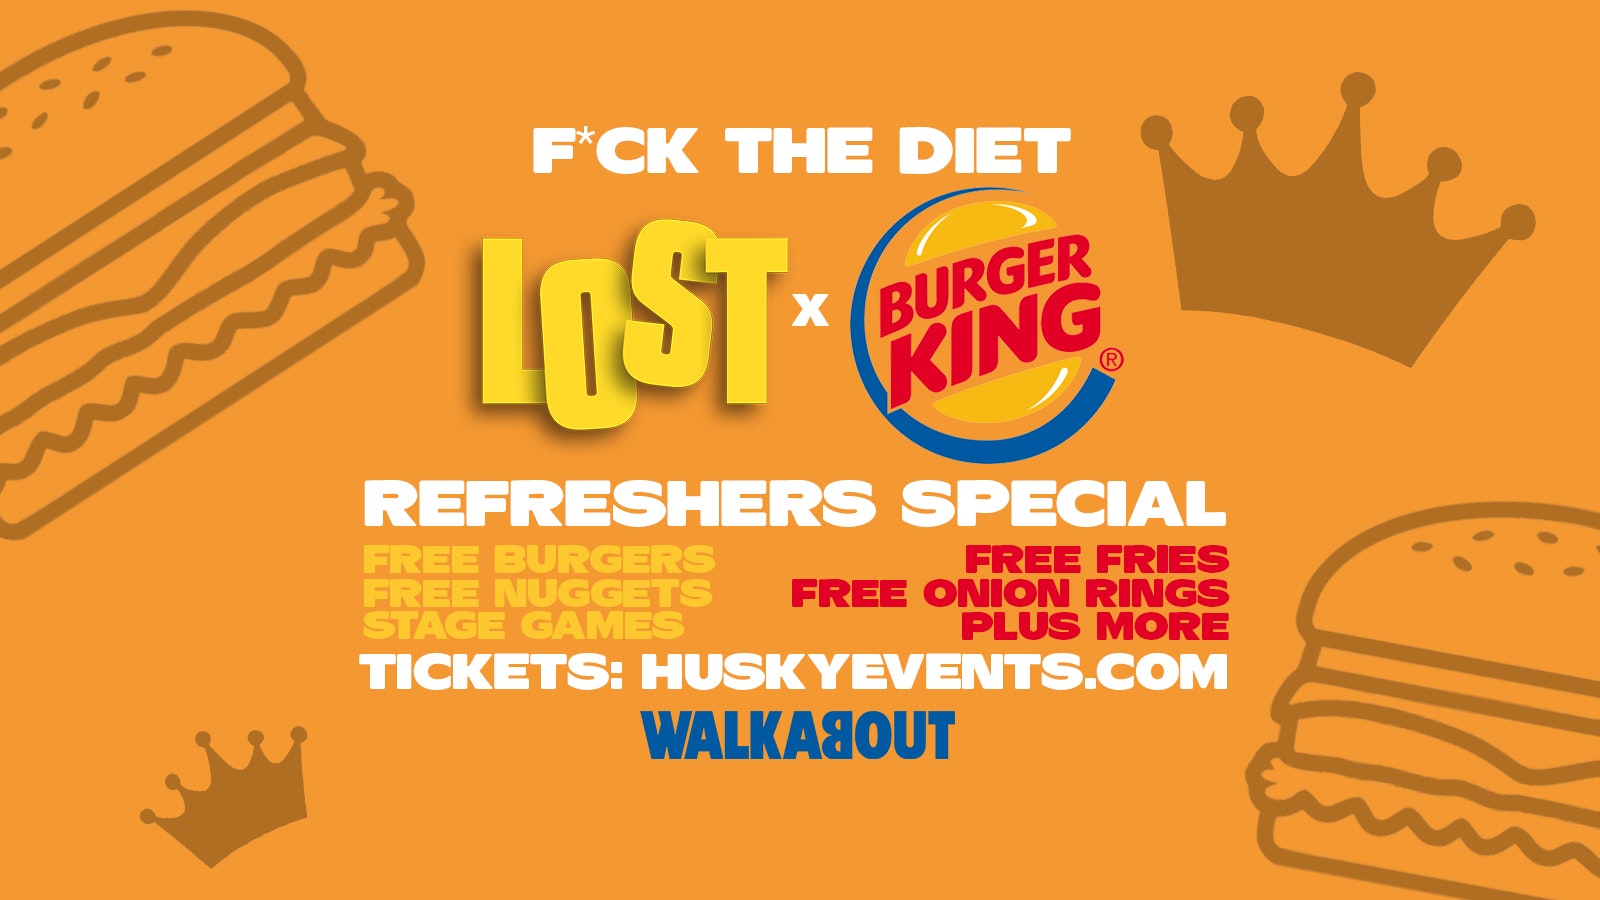 LOST Re-Freshers x Burger King Bonanza | F**k The Diet – 29.01.22